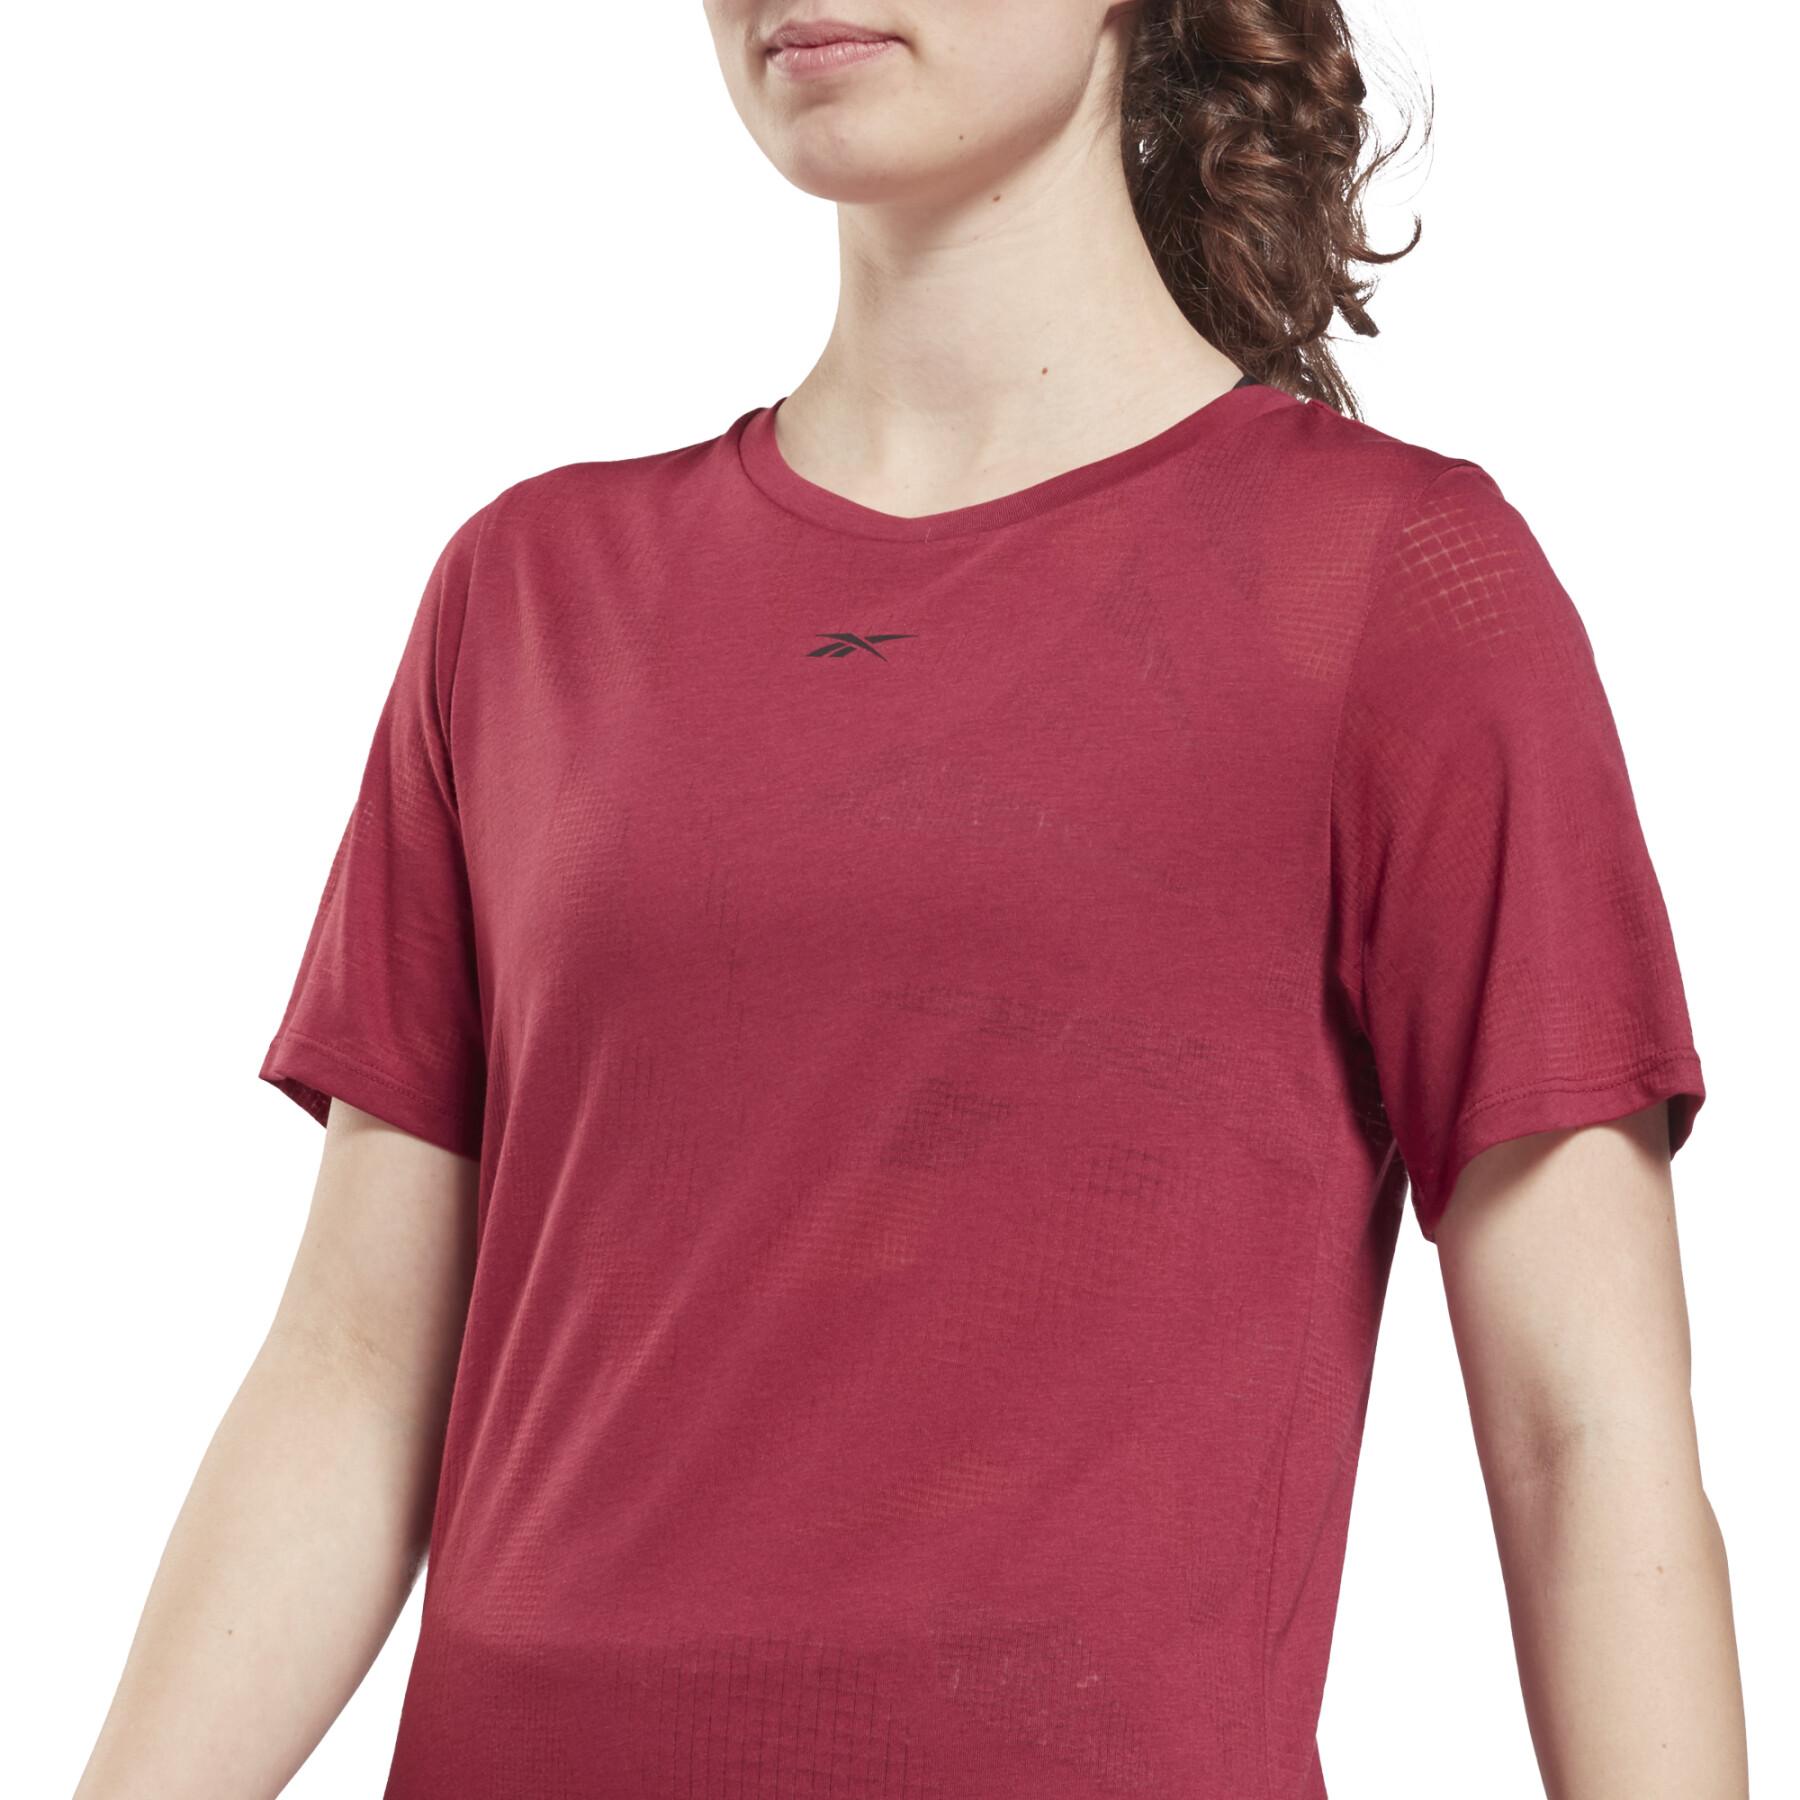 Women's semi-openworked T-shirt Reebok